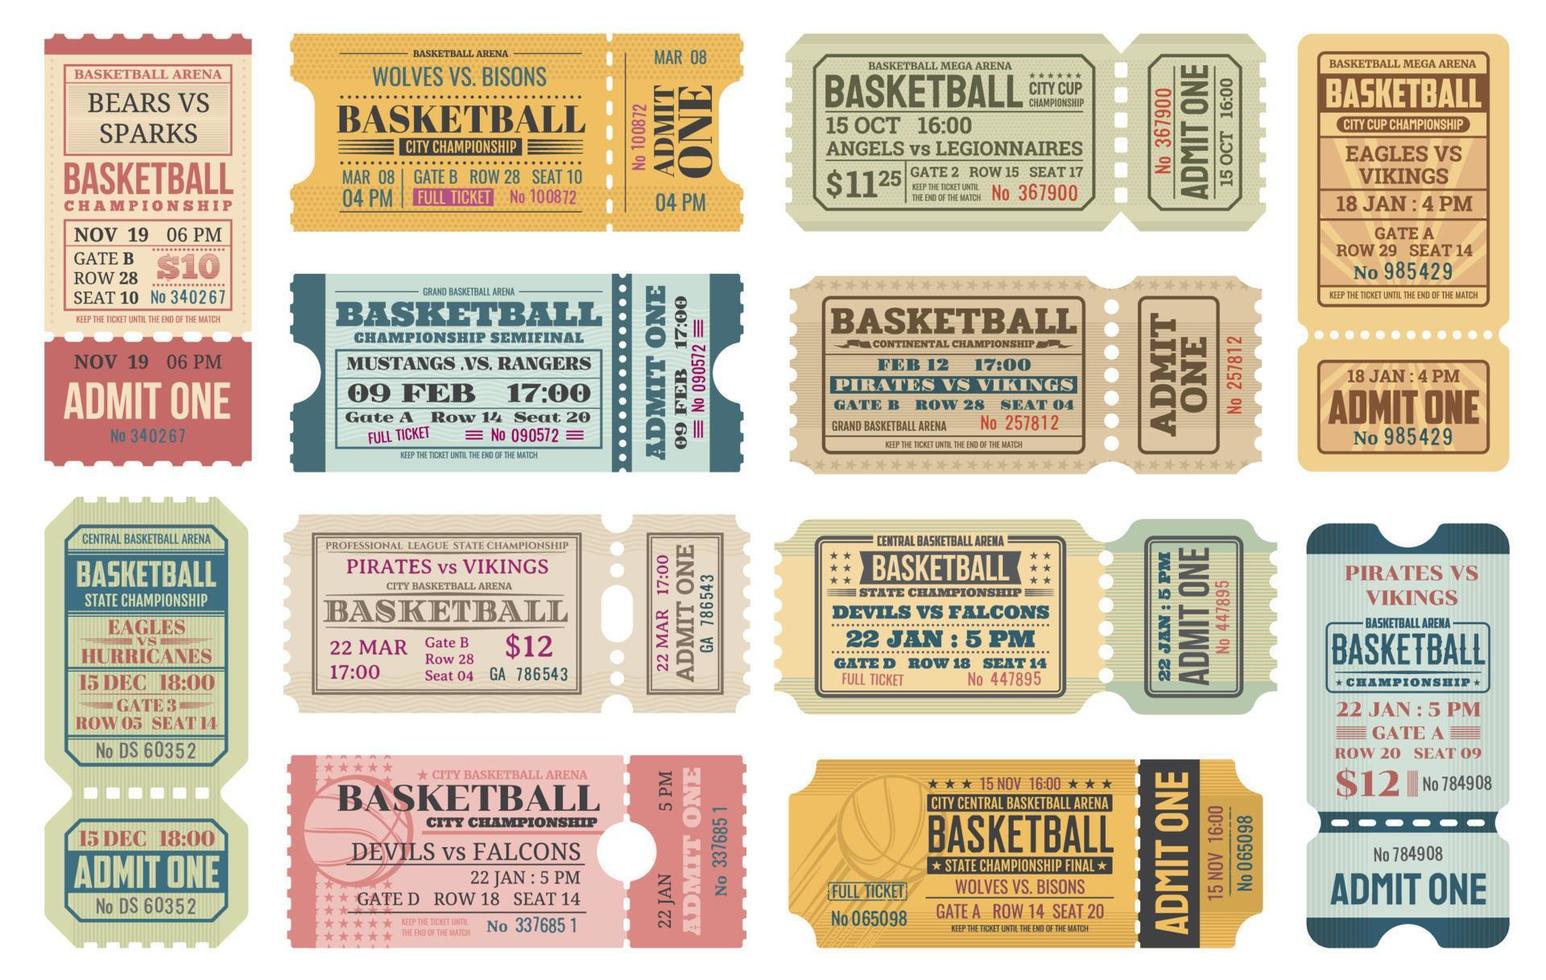 plantillas de boletos del juego deportivo de baloncesto vector